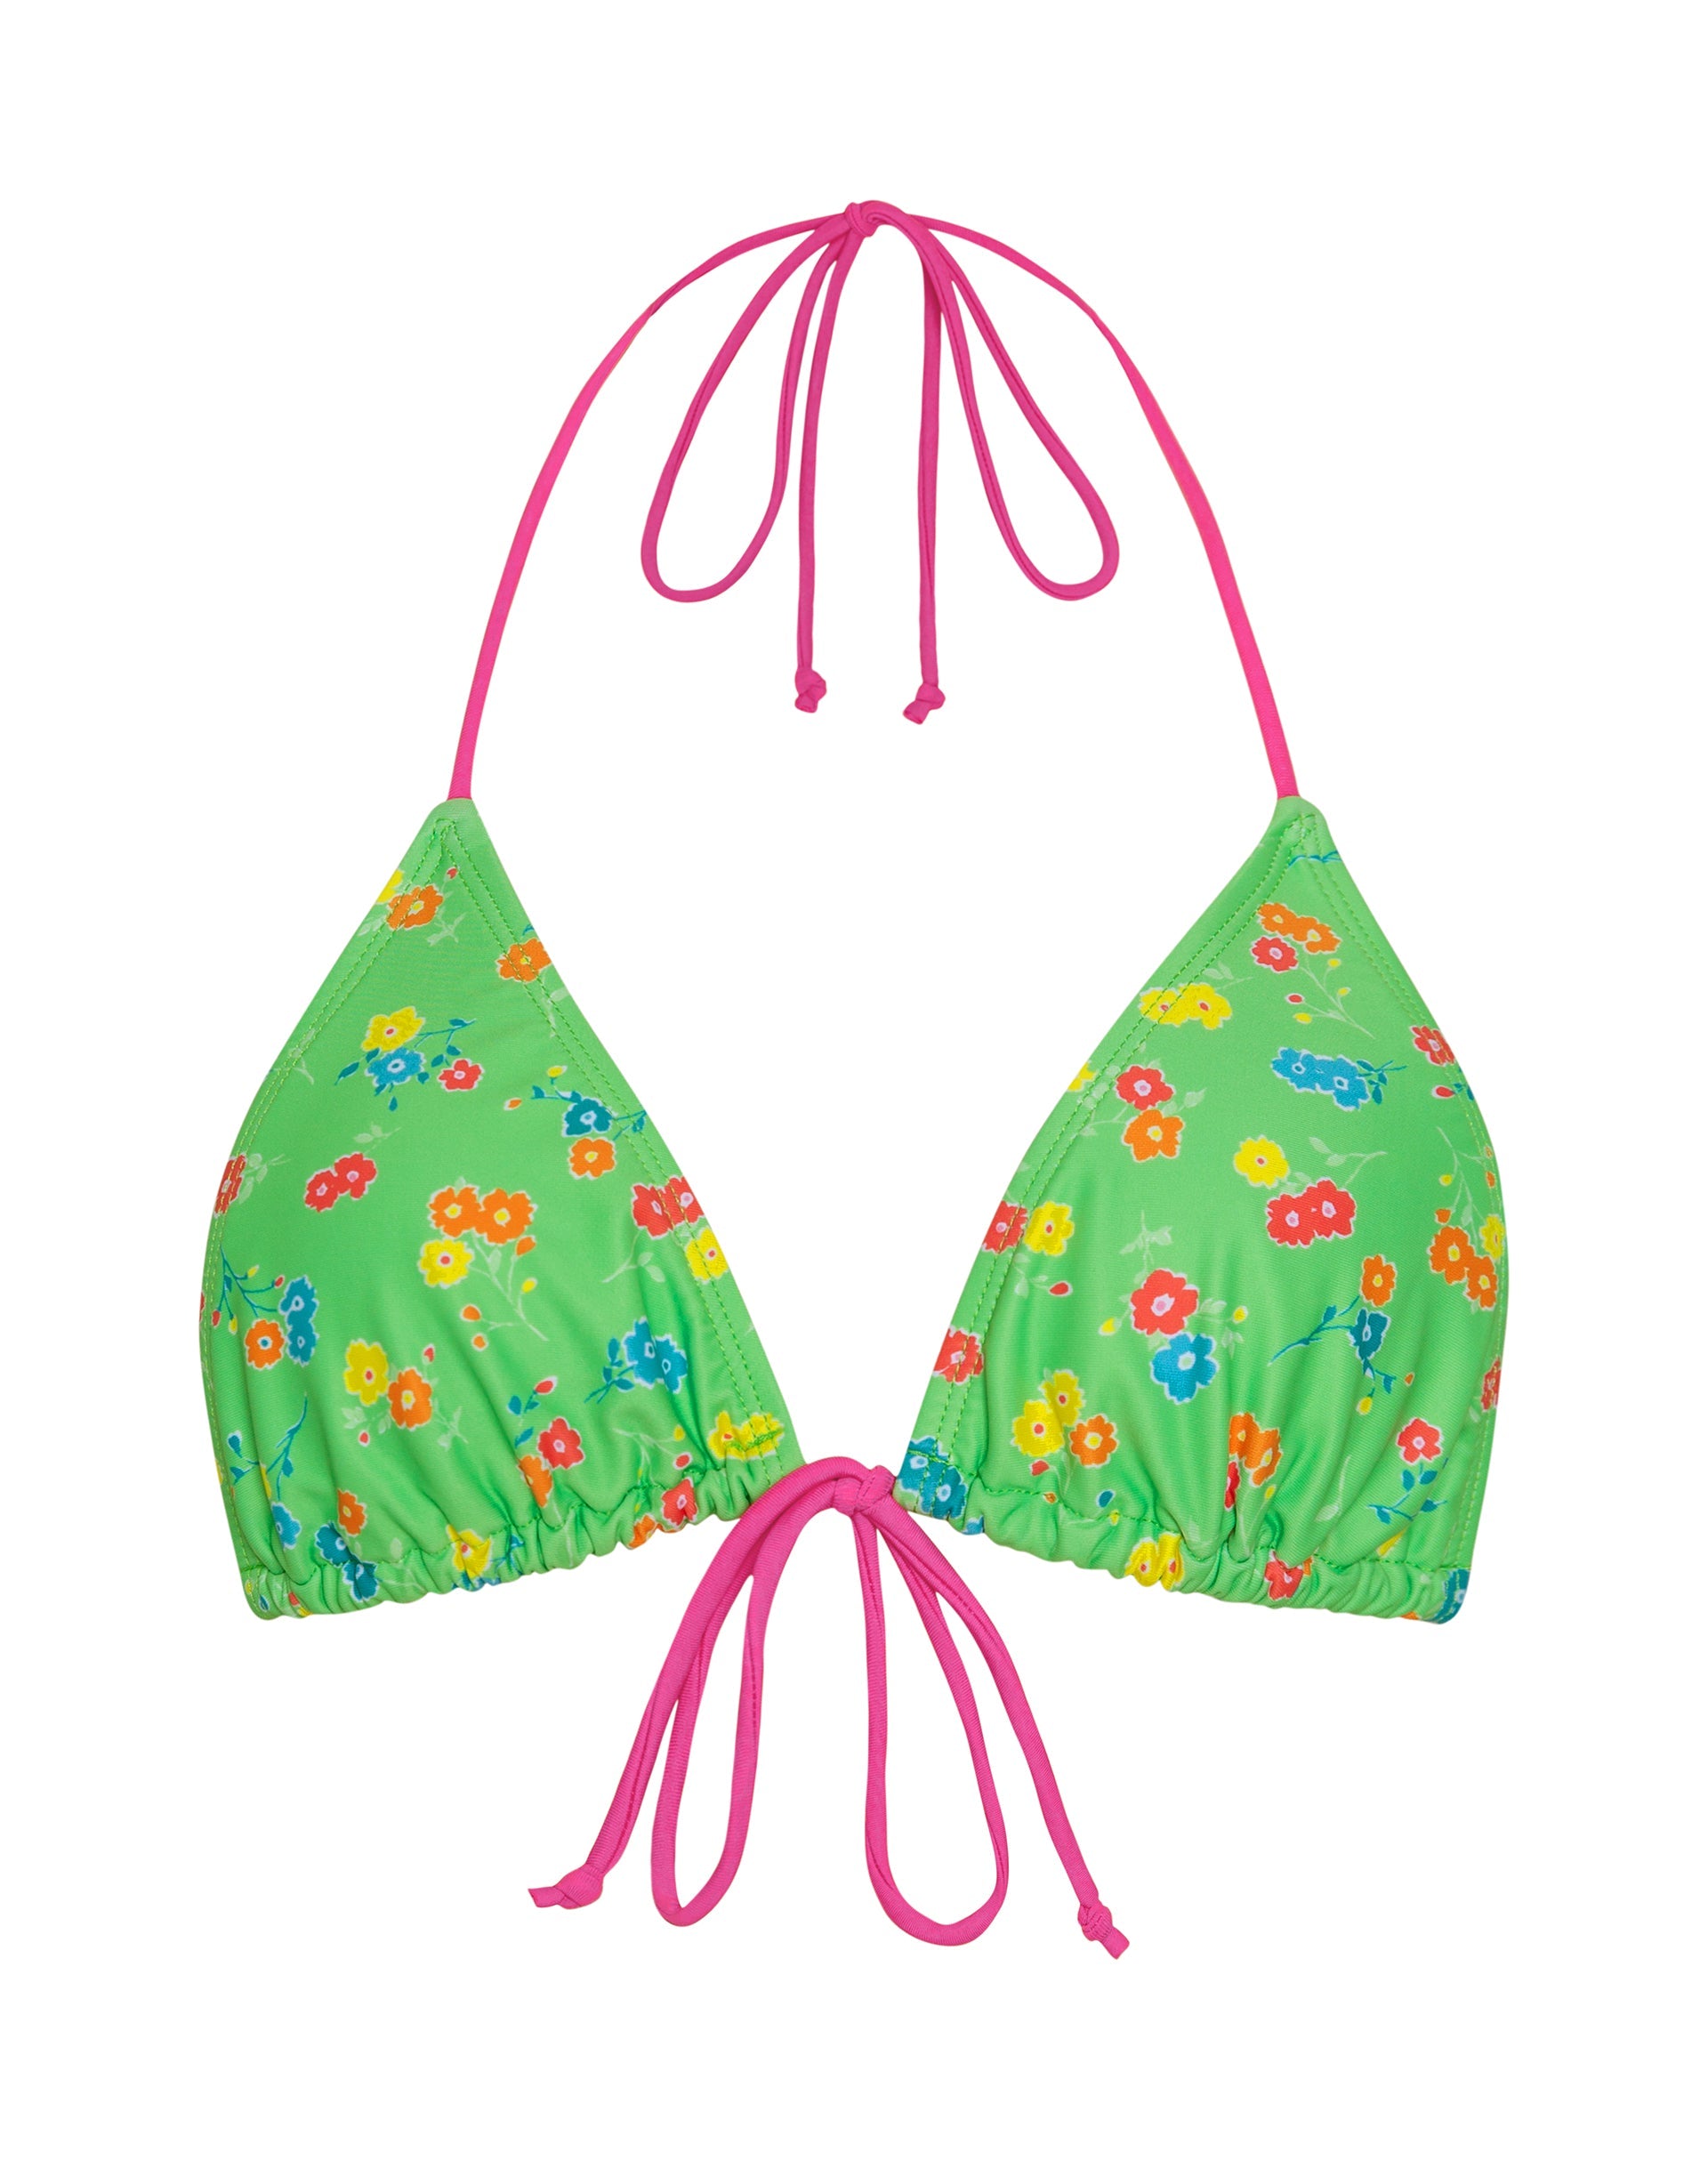 Image of Pamita Bikini Top in Green Floral with Pink Binding